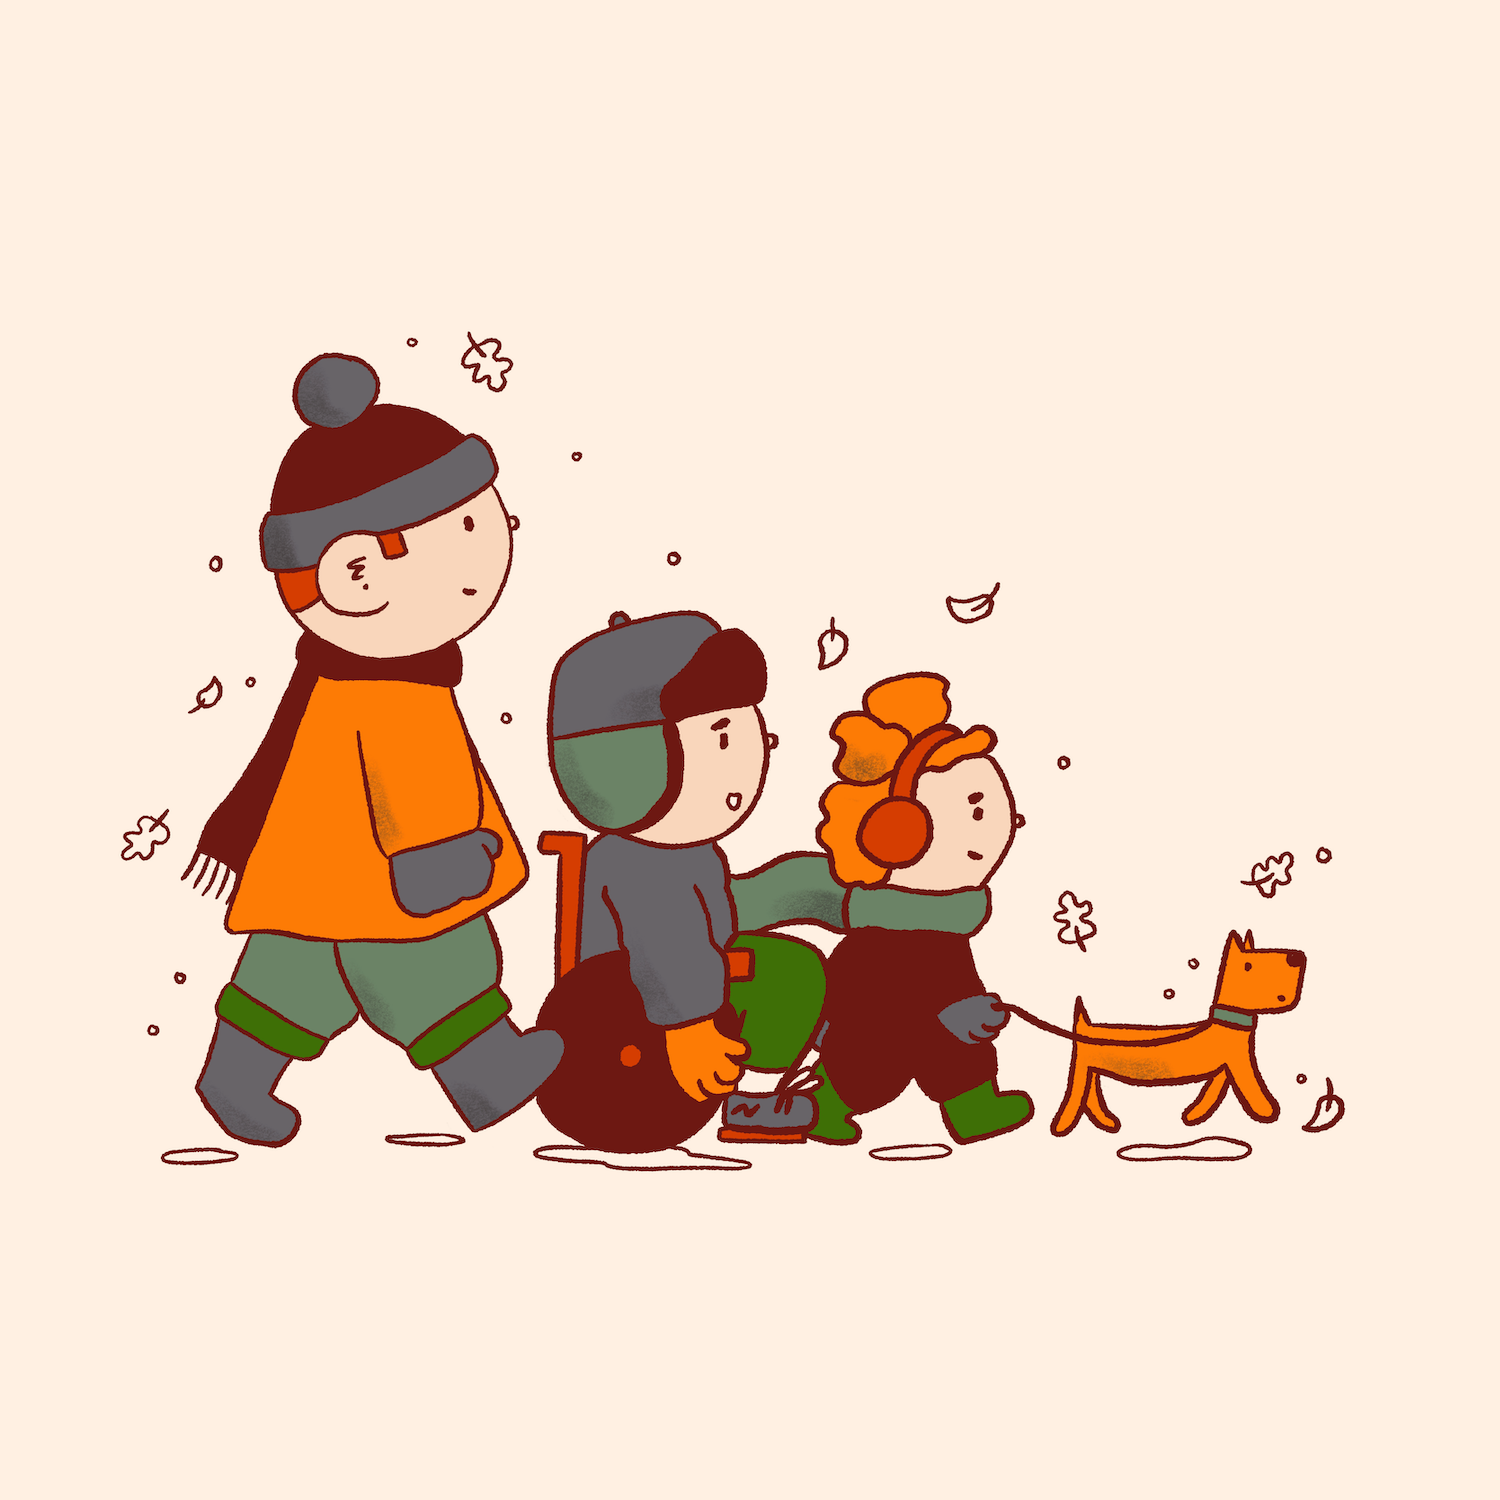 vicky-hughes-winter-walk-illustration.png